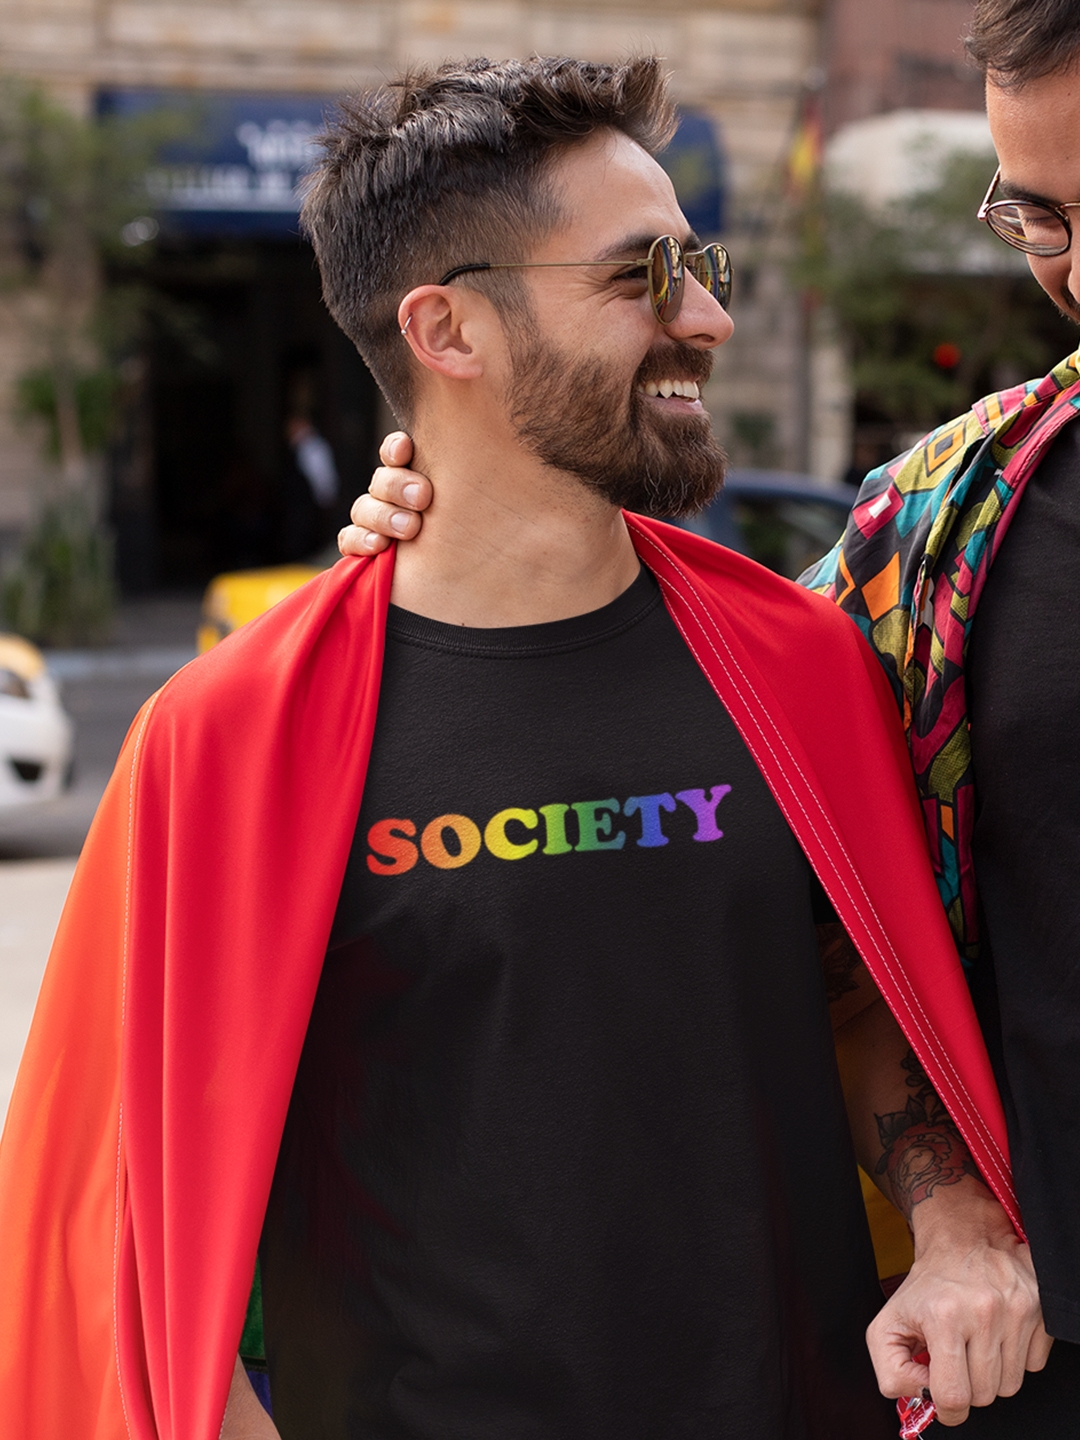 creativeideas.store | LGBT Pride Society Black Tshirt